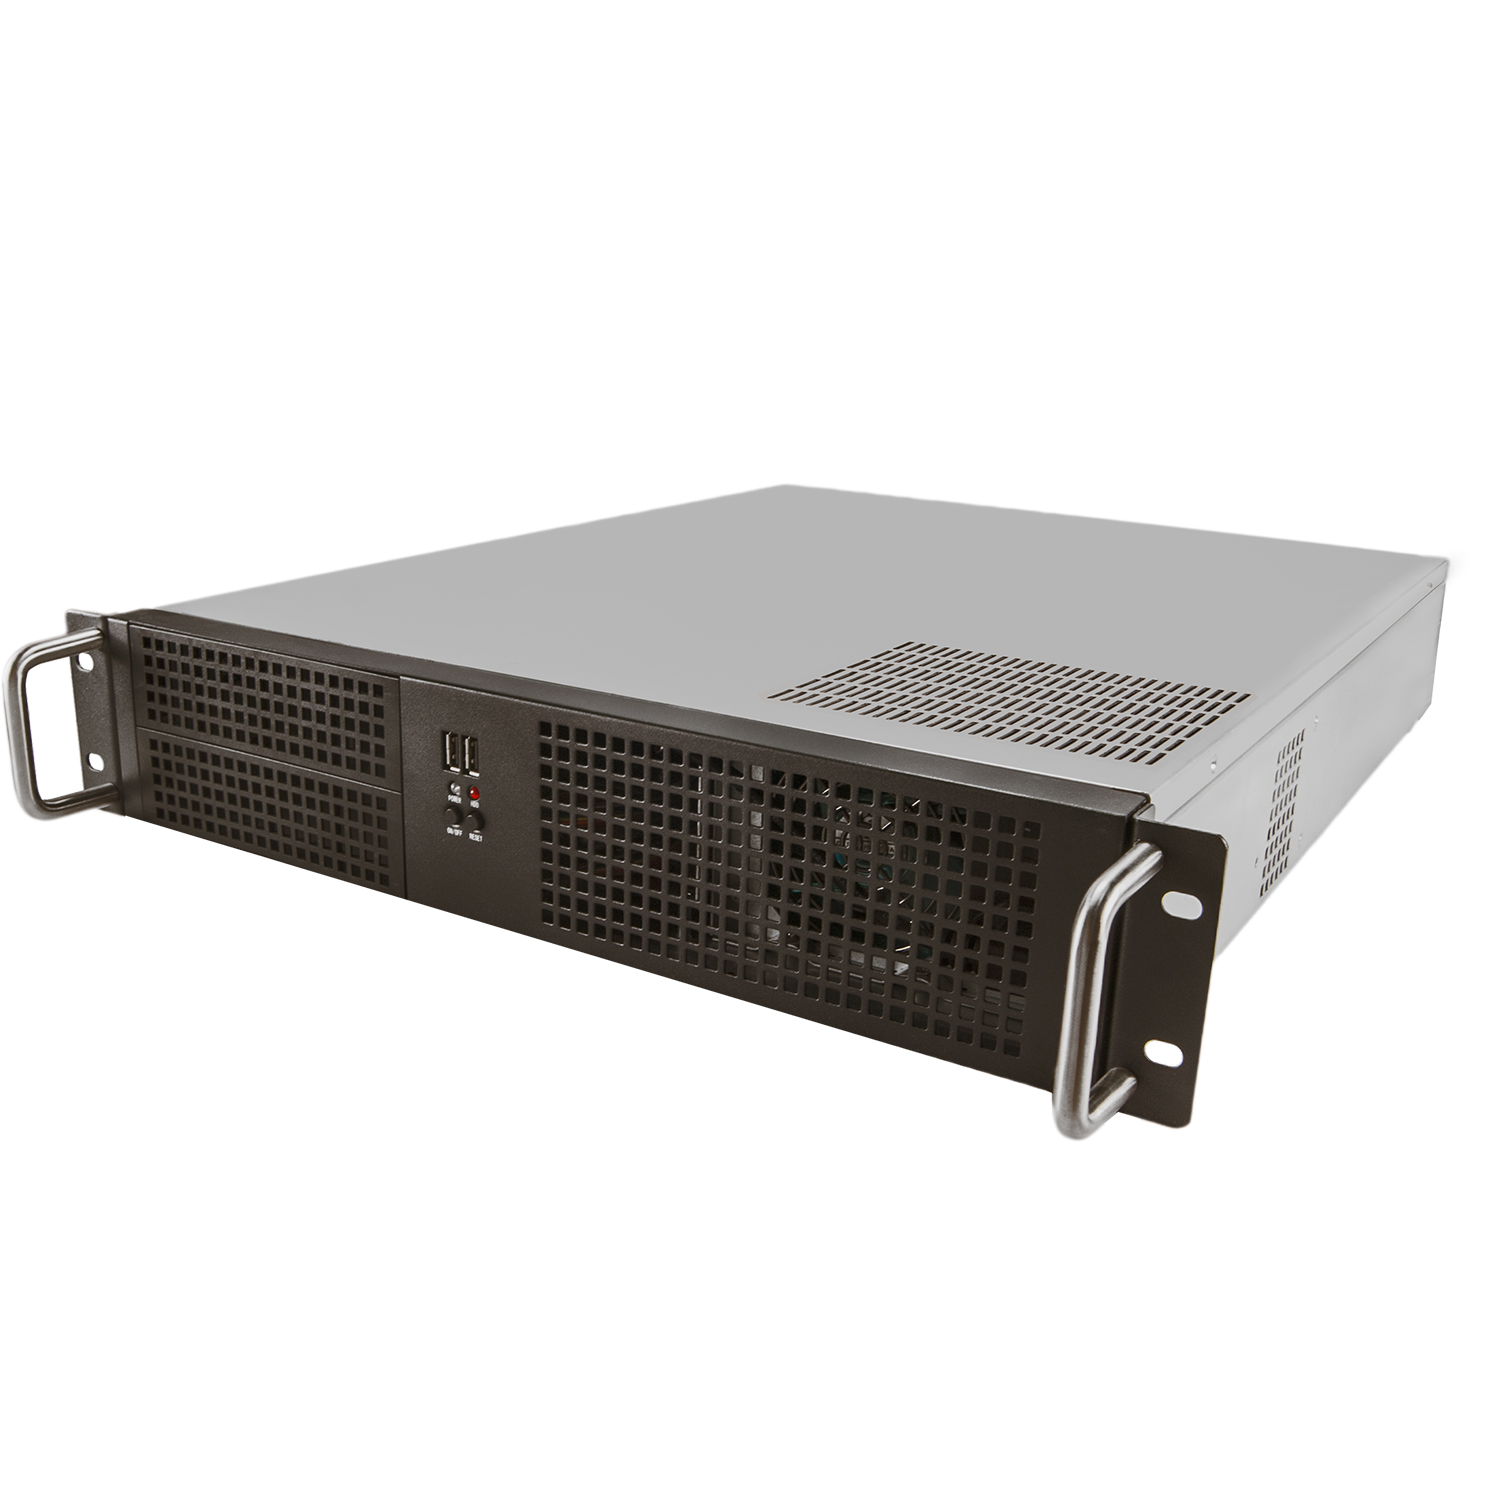 Серверный корпус 2U NR-N2055 (ATX 12?10.5, 2x5.25ext, 6x3.5int, 550mm) чёрный, NegoRack